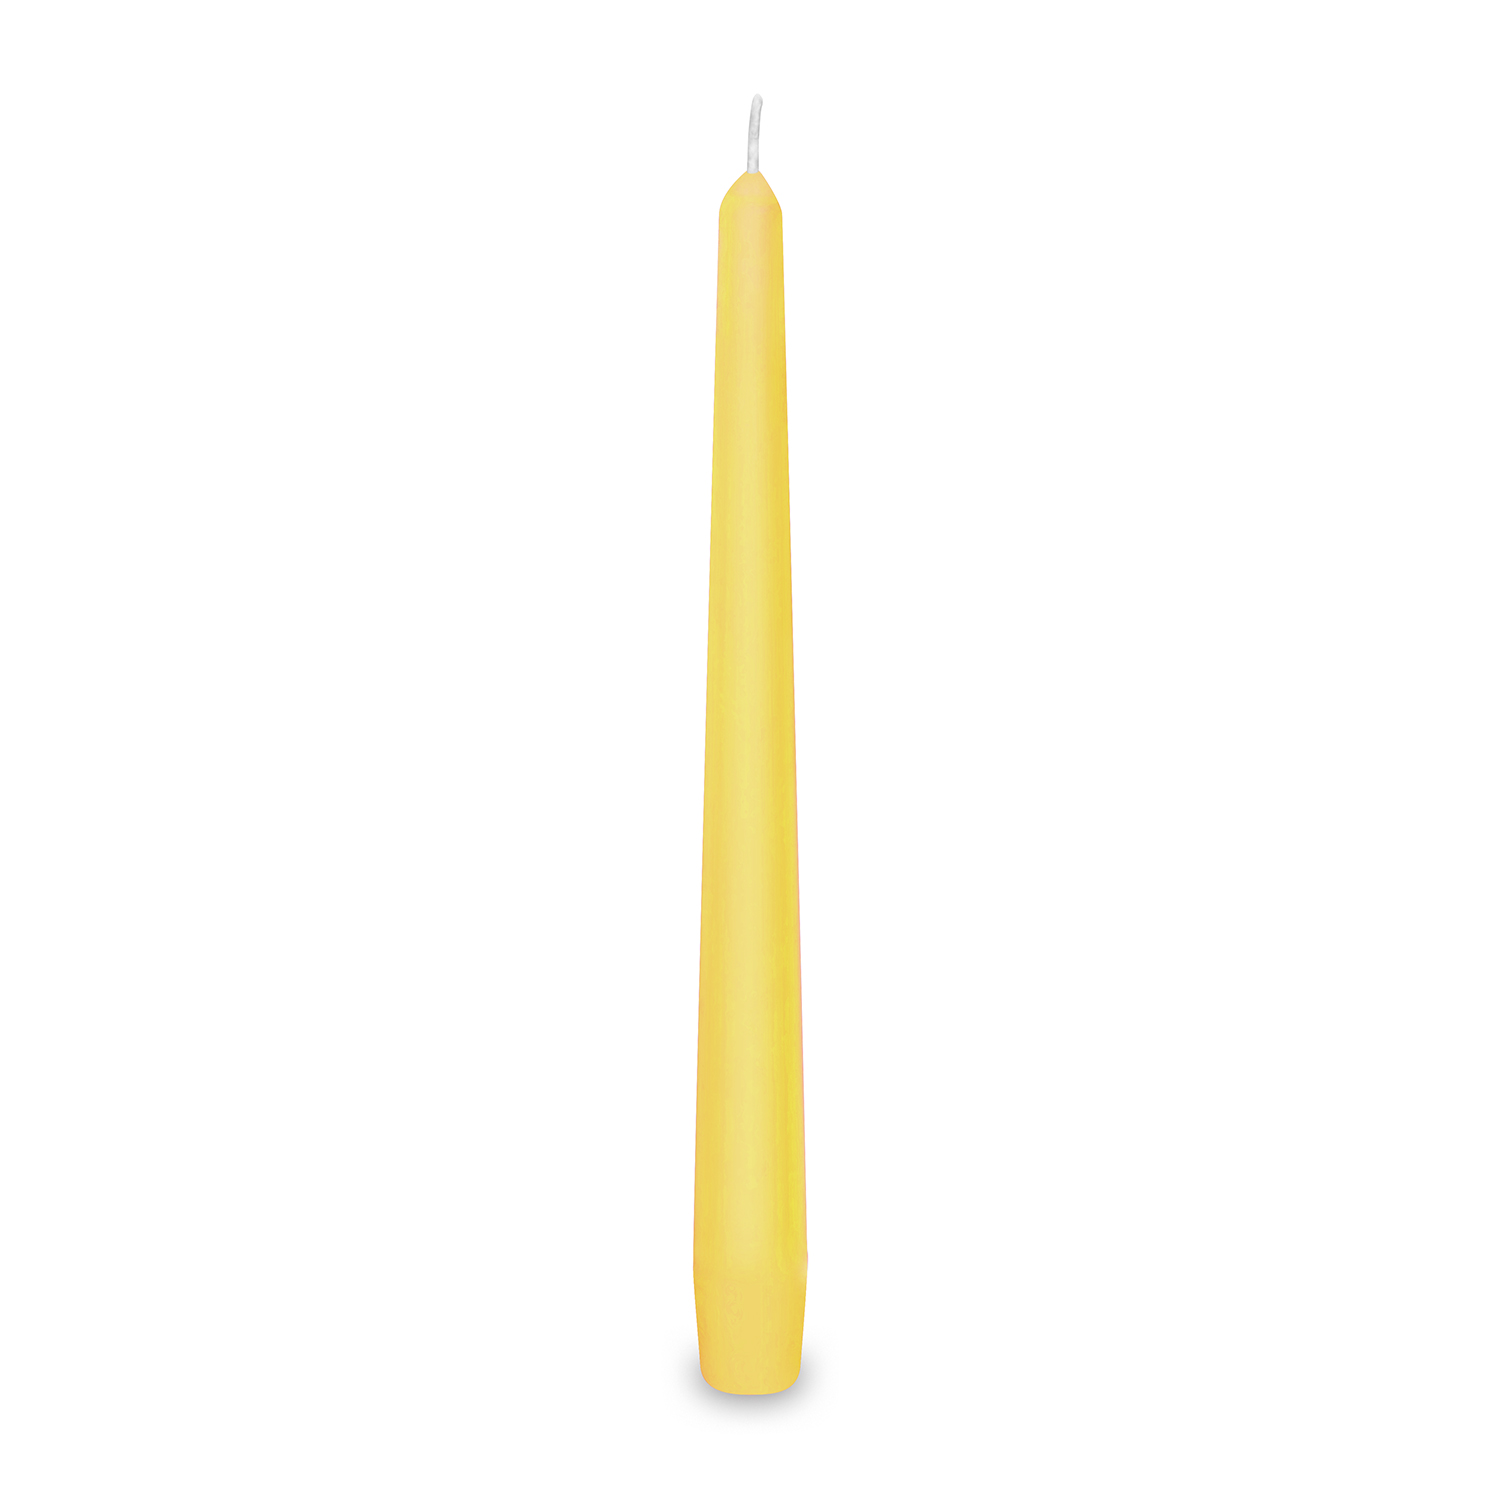 Svíčky 24 cm / 10 ks, žluté, kónické